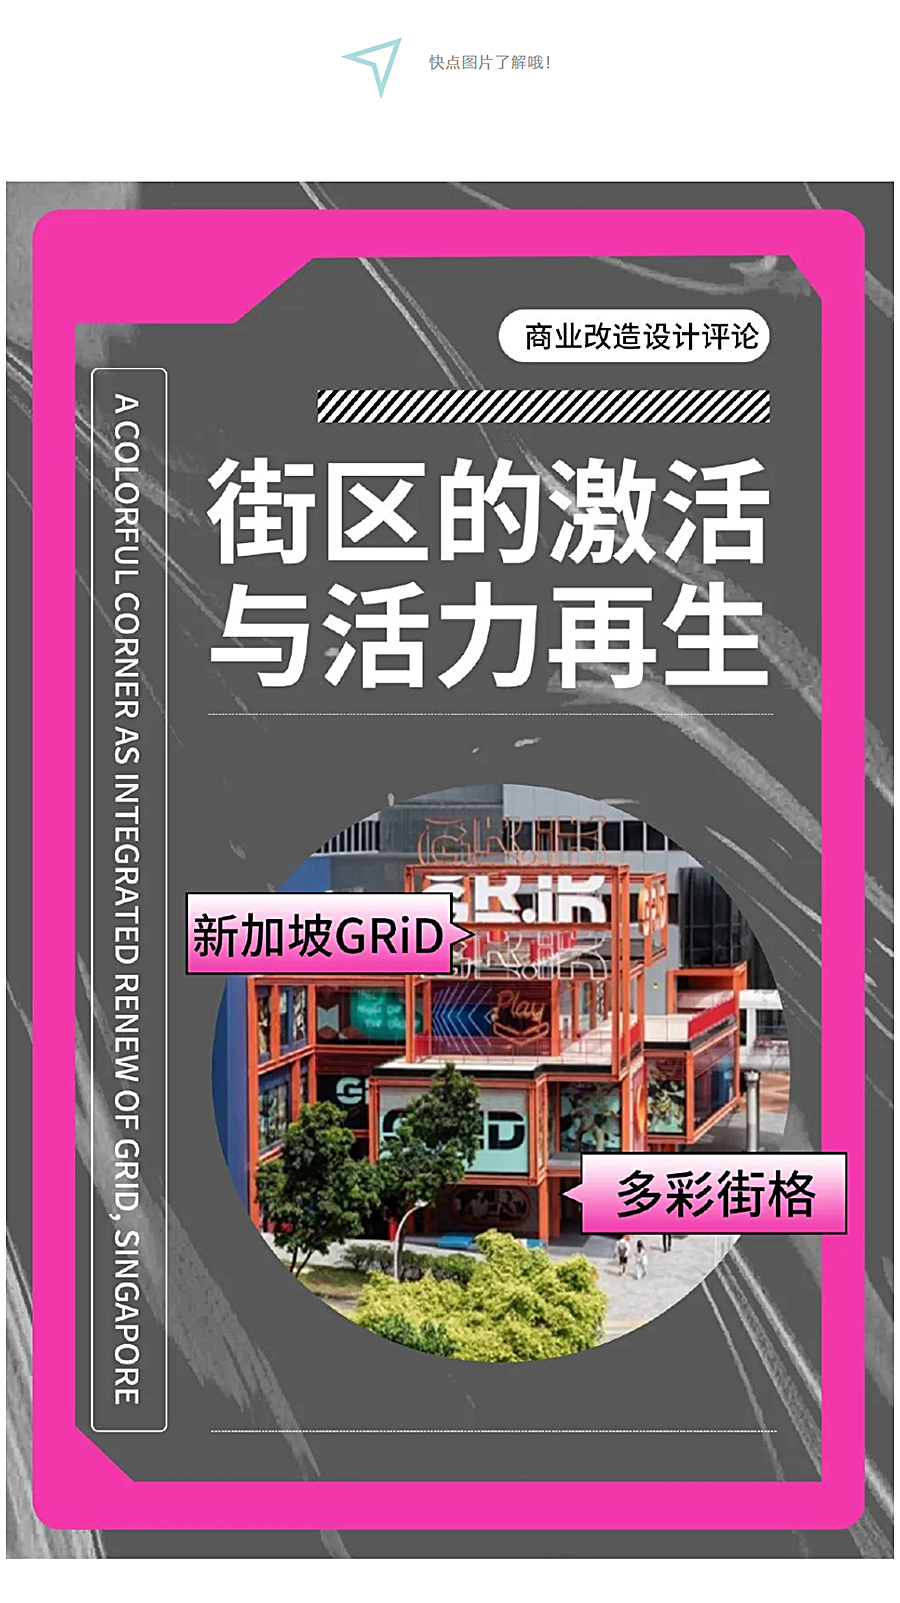 多彩街格：新加坡GRiD商业改造设计评论_0001_图层-2.jpg